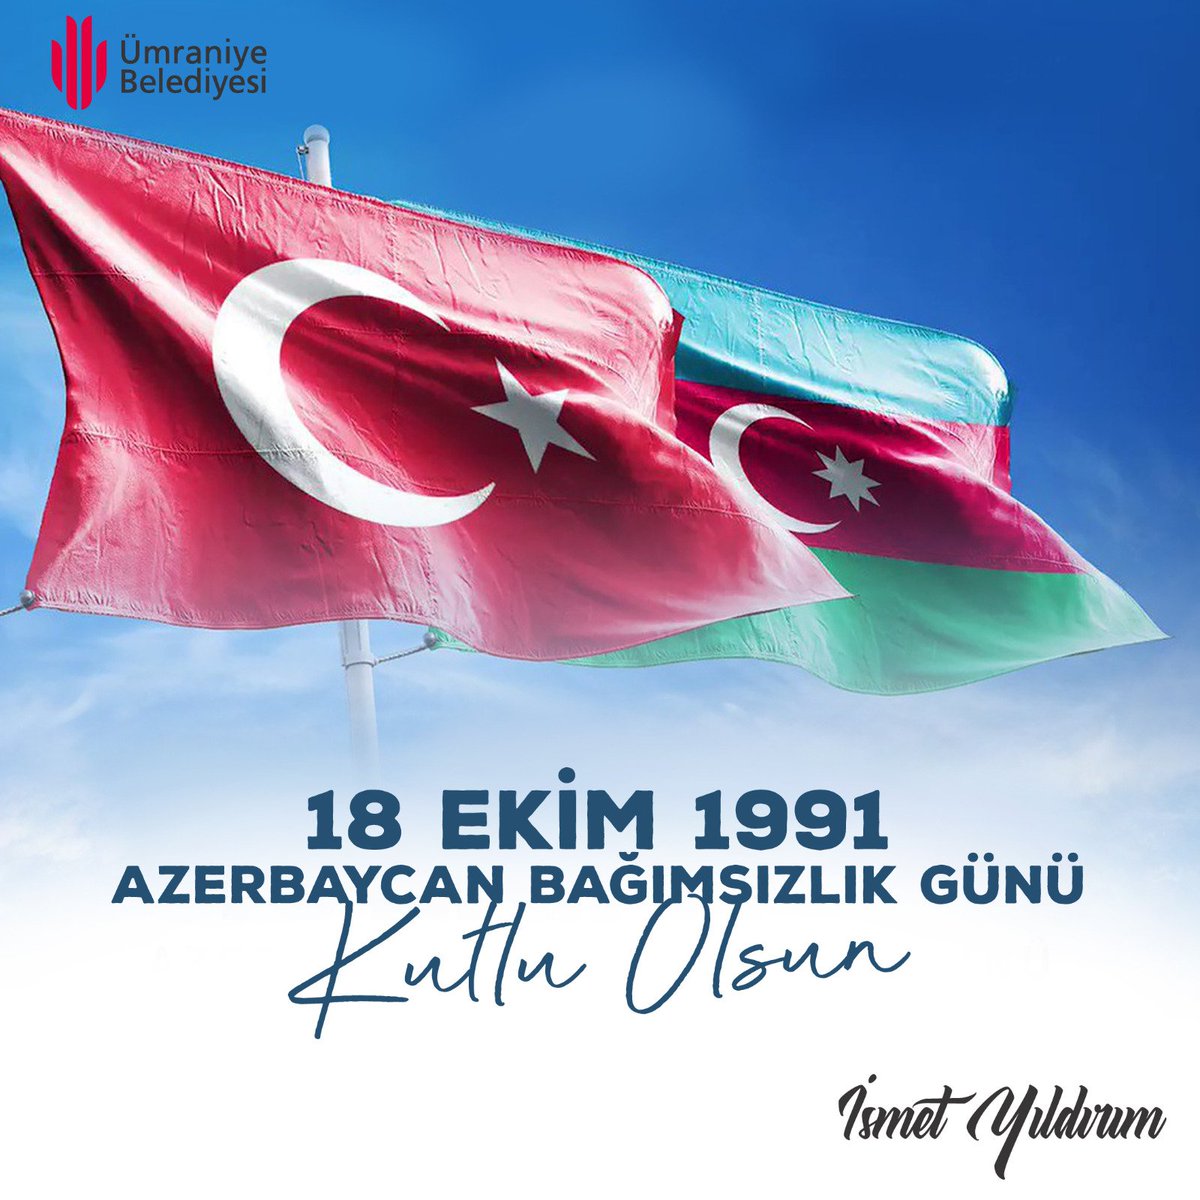 İki dövlət bir millət 🇦🇿🇹🇷 Dost ve kardeş ülke can #Azerbaycan'ın ve Azerbaycanlı kardeşlerimizin bağımsızlık günü kutlu olsun.